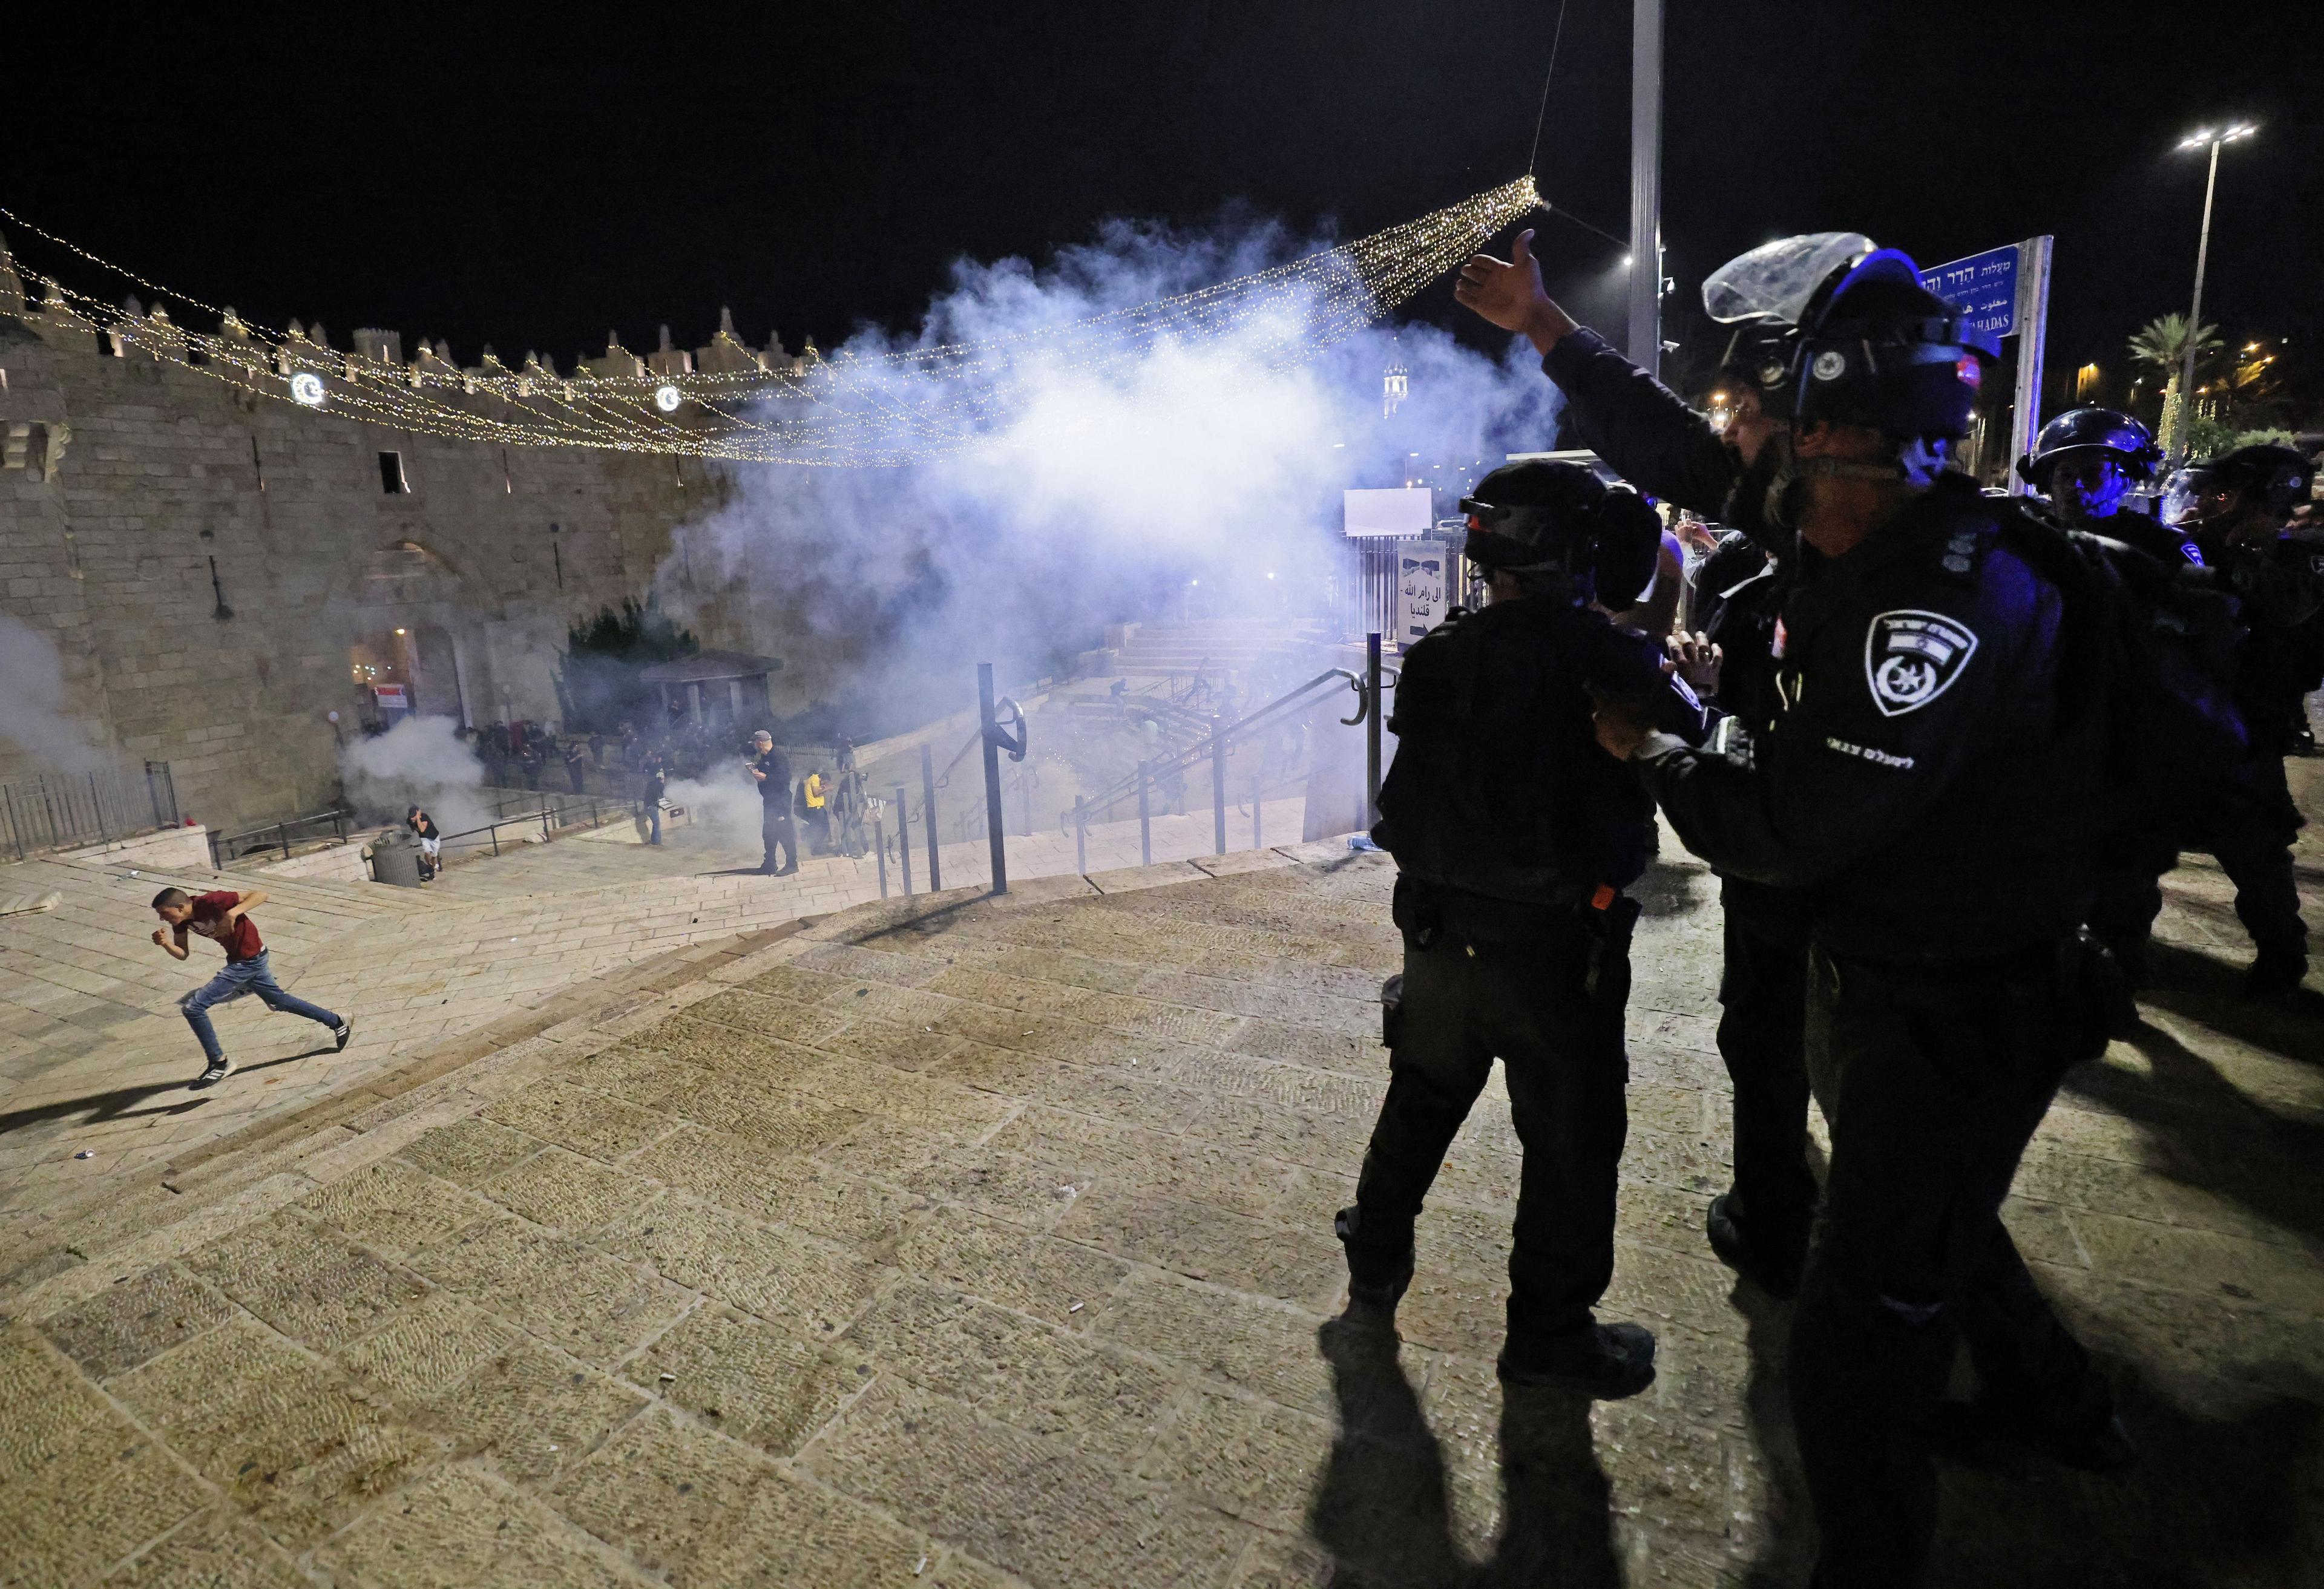 Izralske snage sigurnosti rastjeruju ljude u Jerusalemu - Avaz